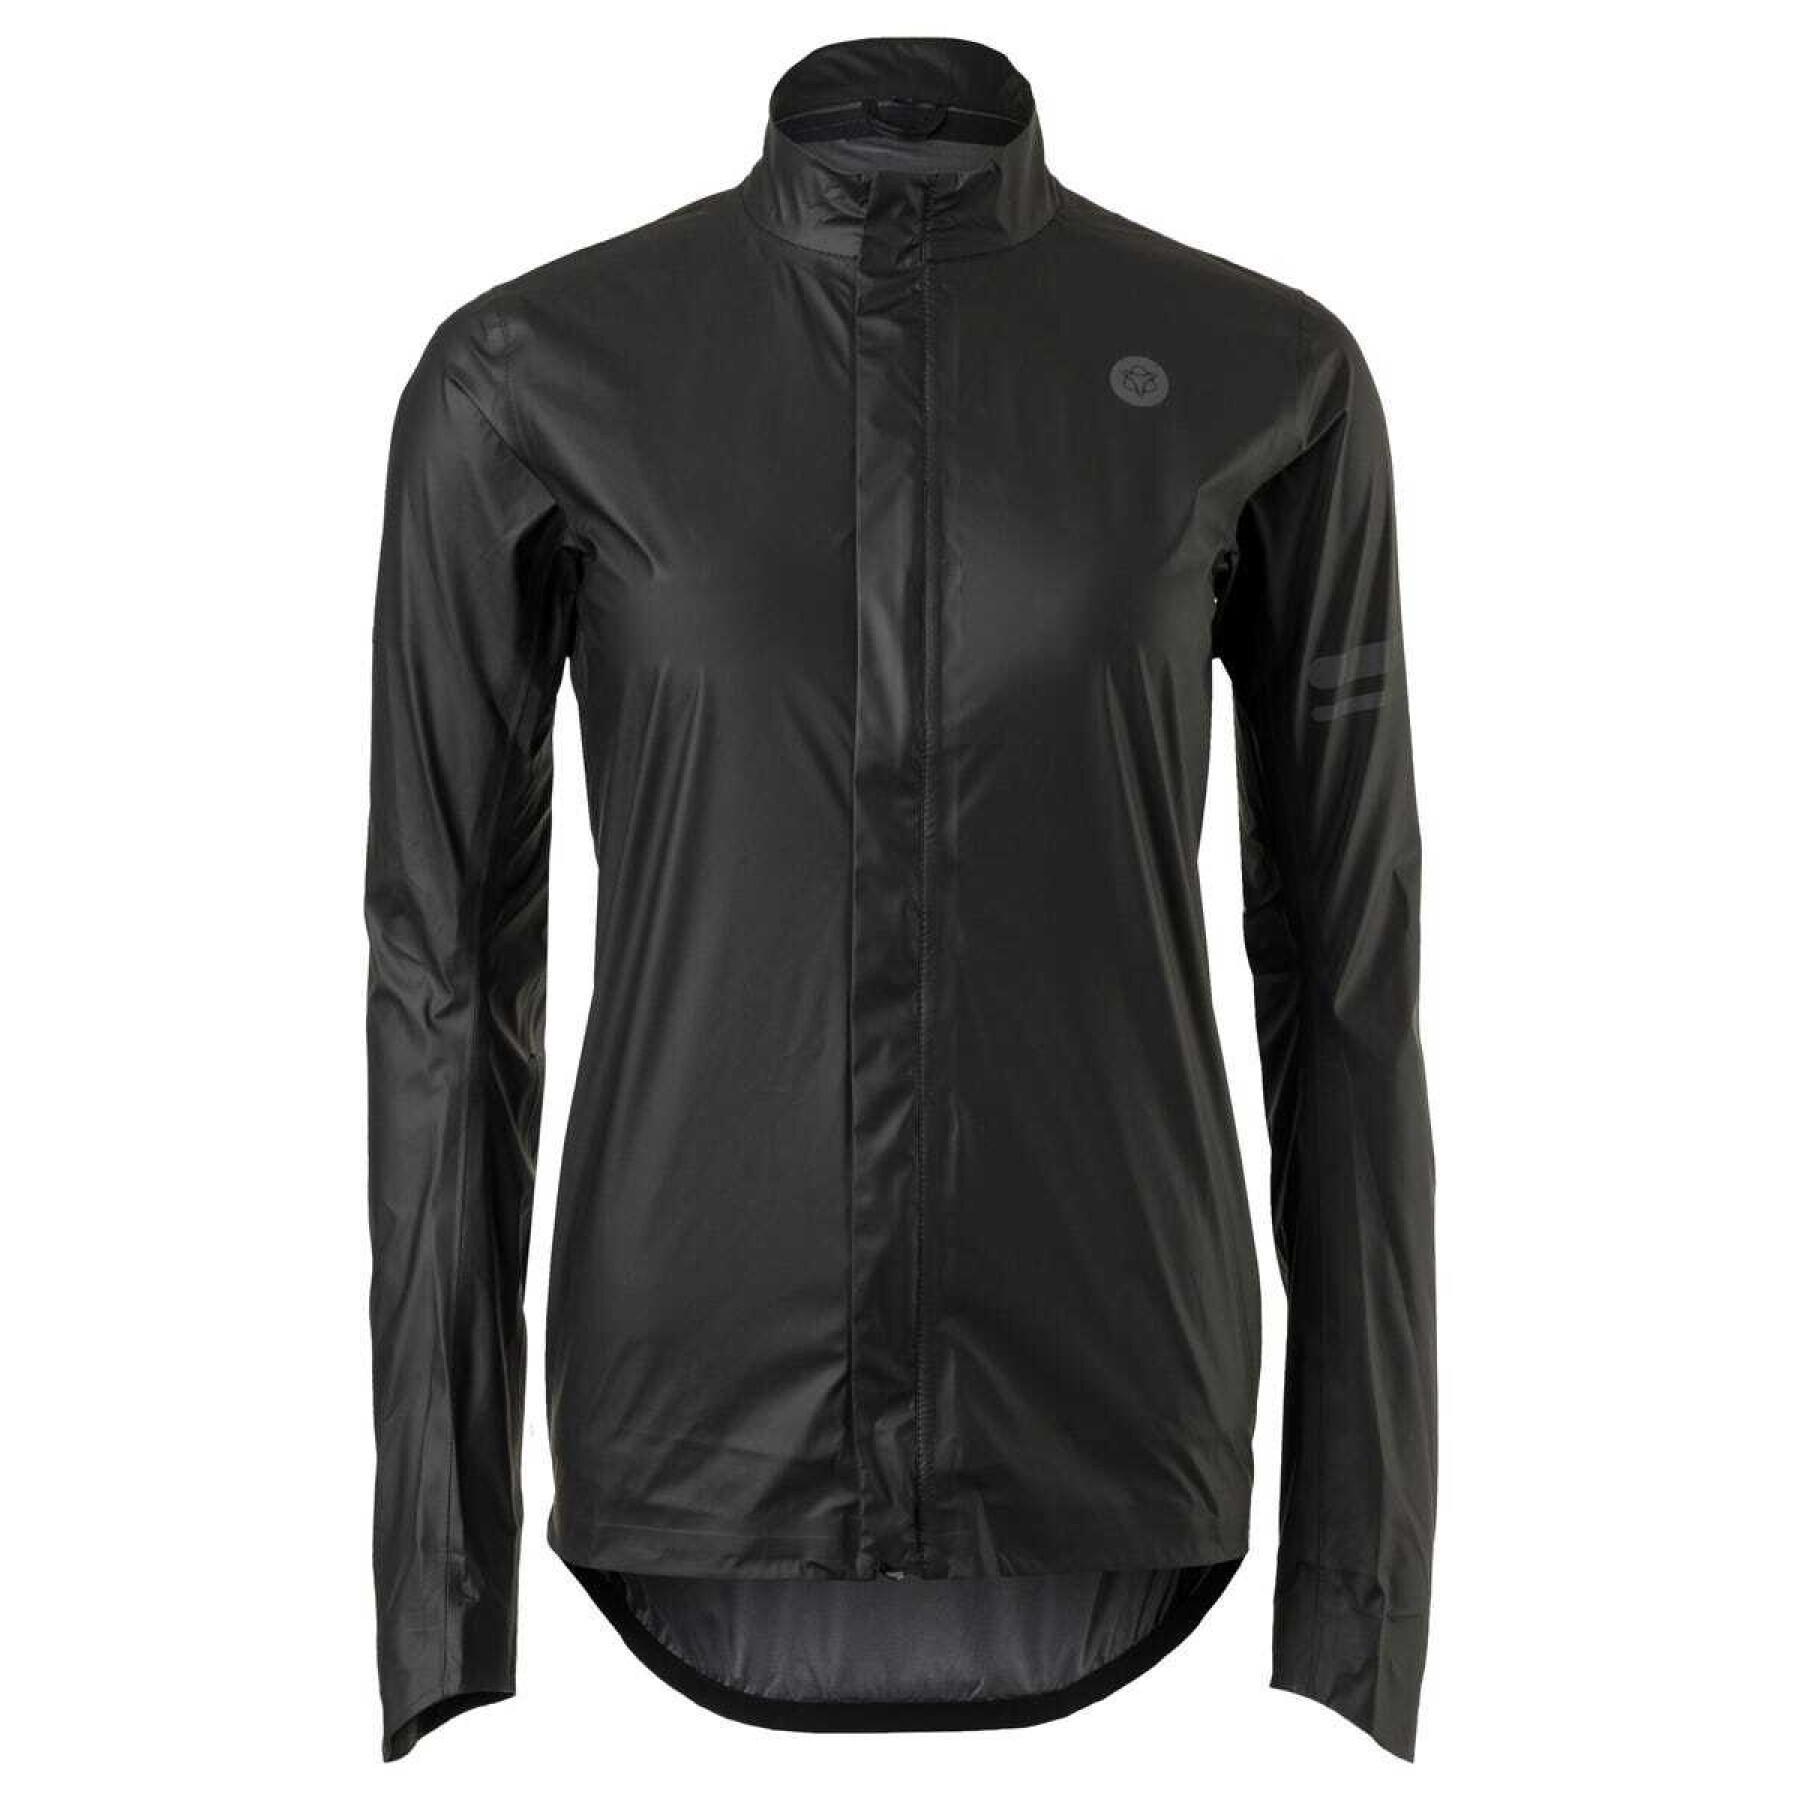 Women's waterproof jacket Agu Topdry Premium